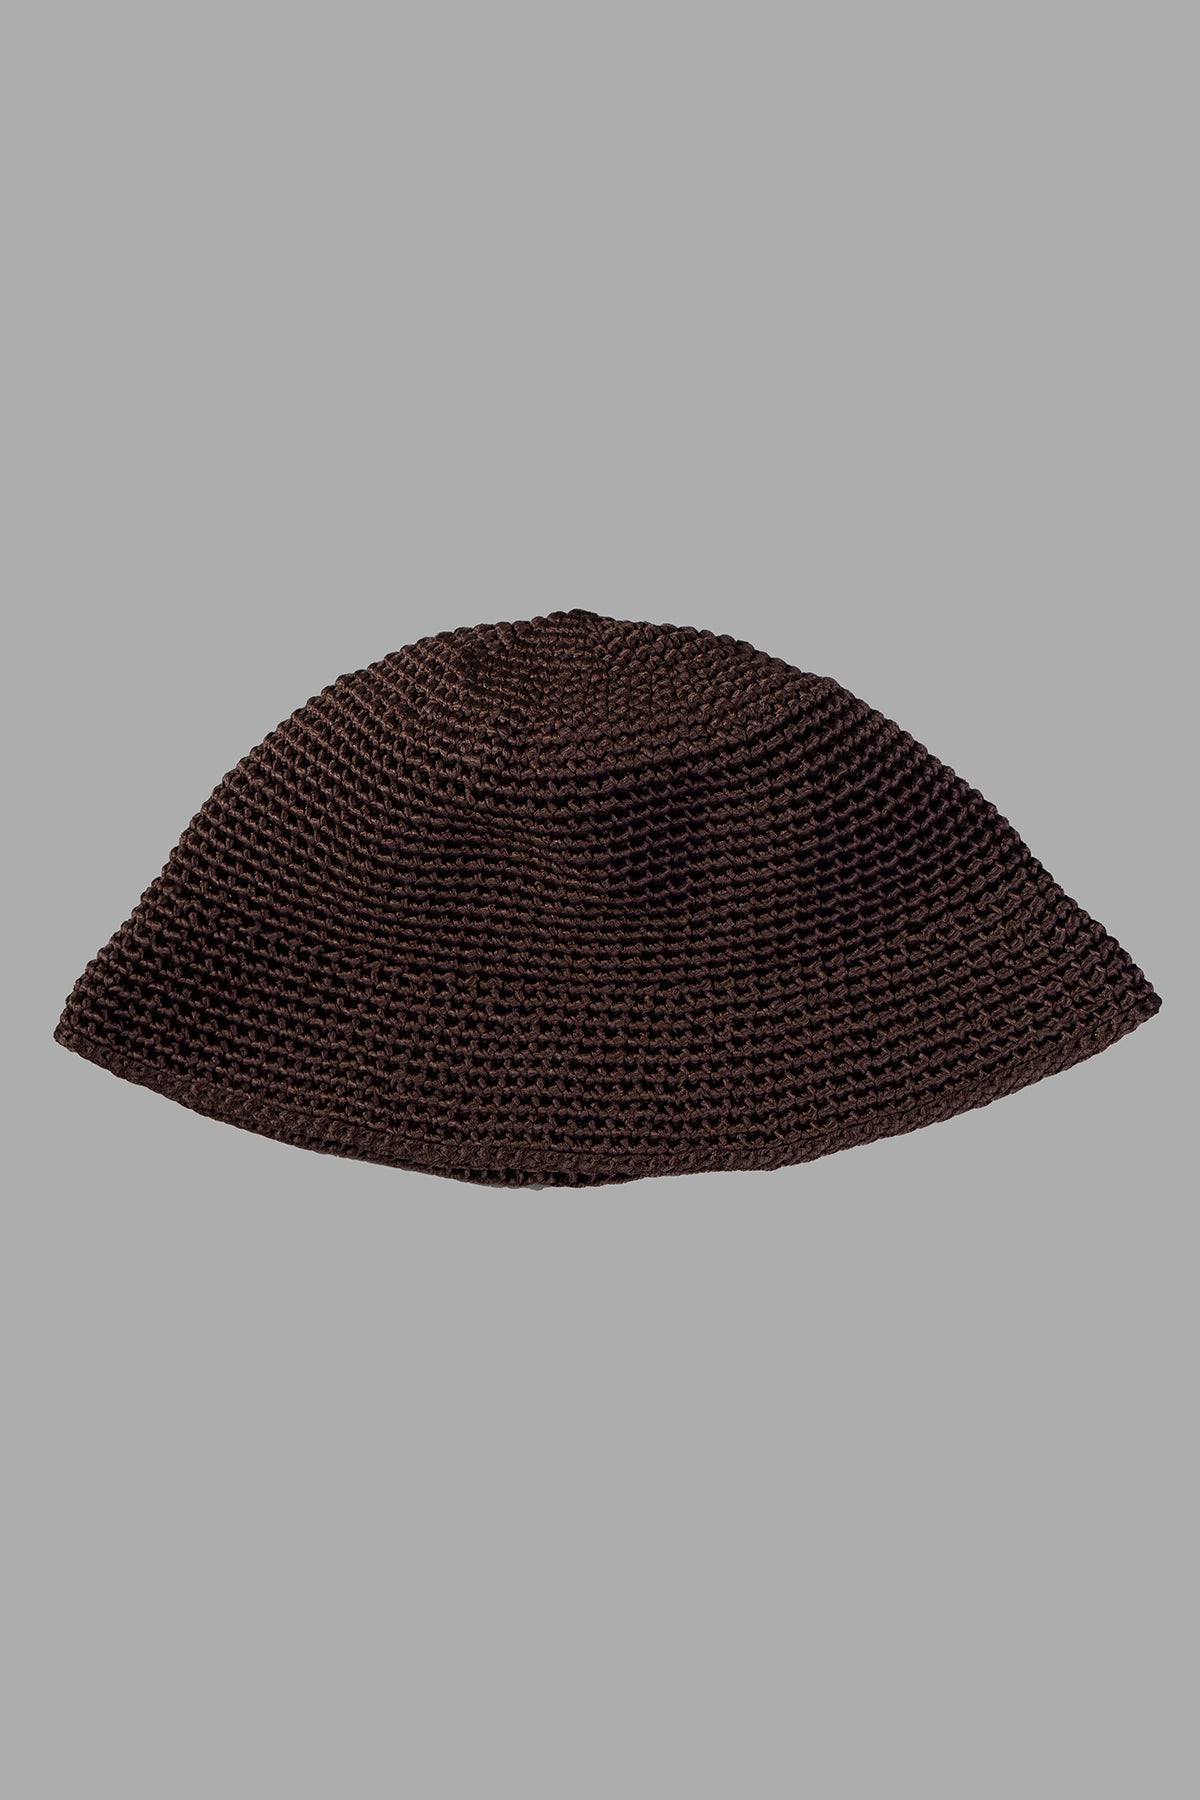 Knit Bucket Hat